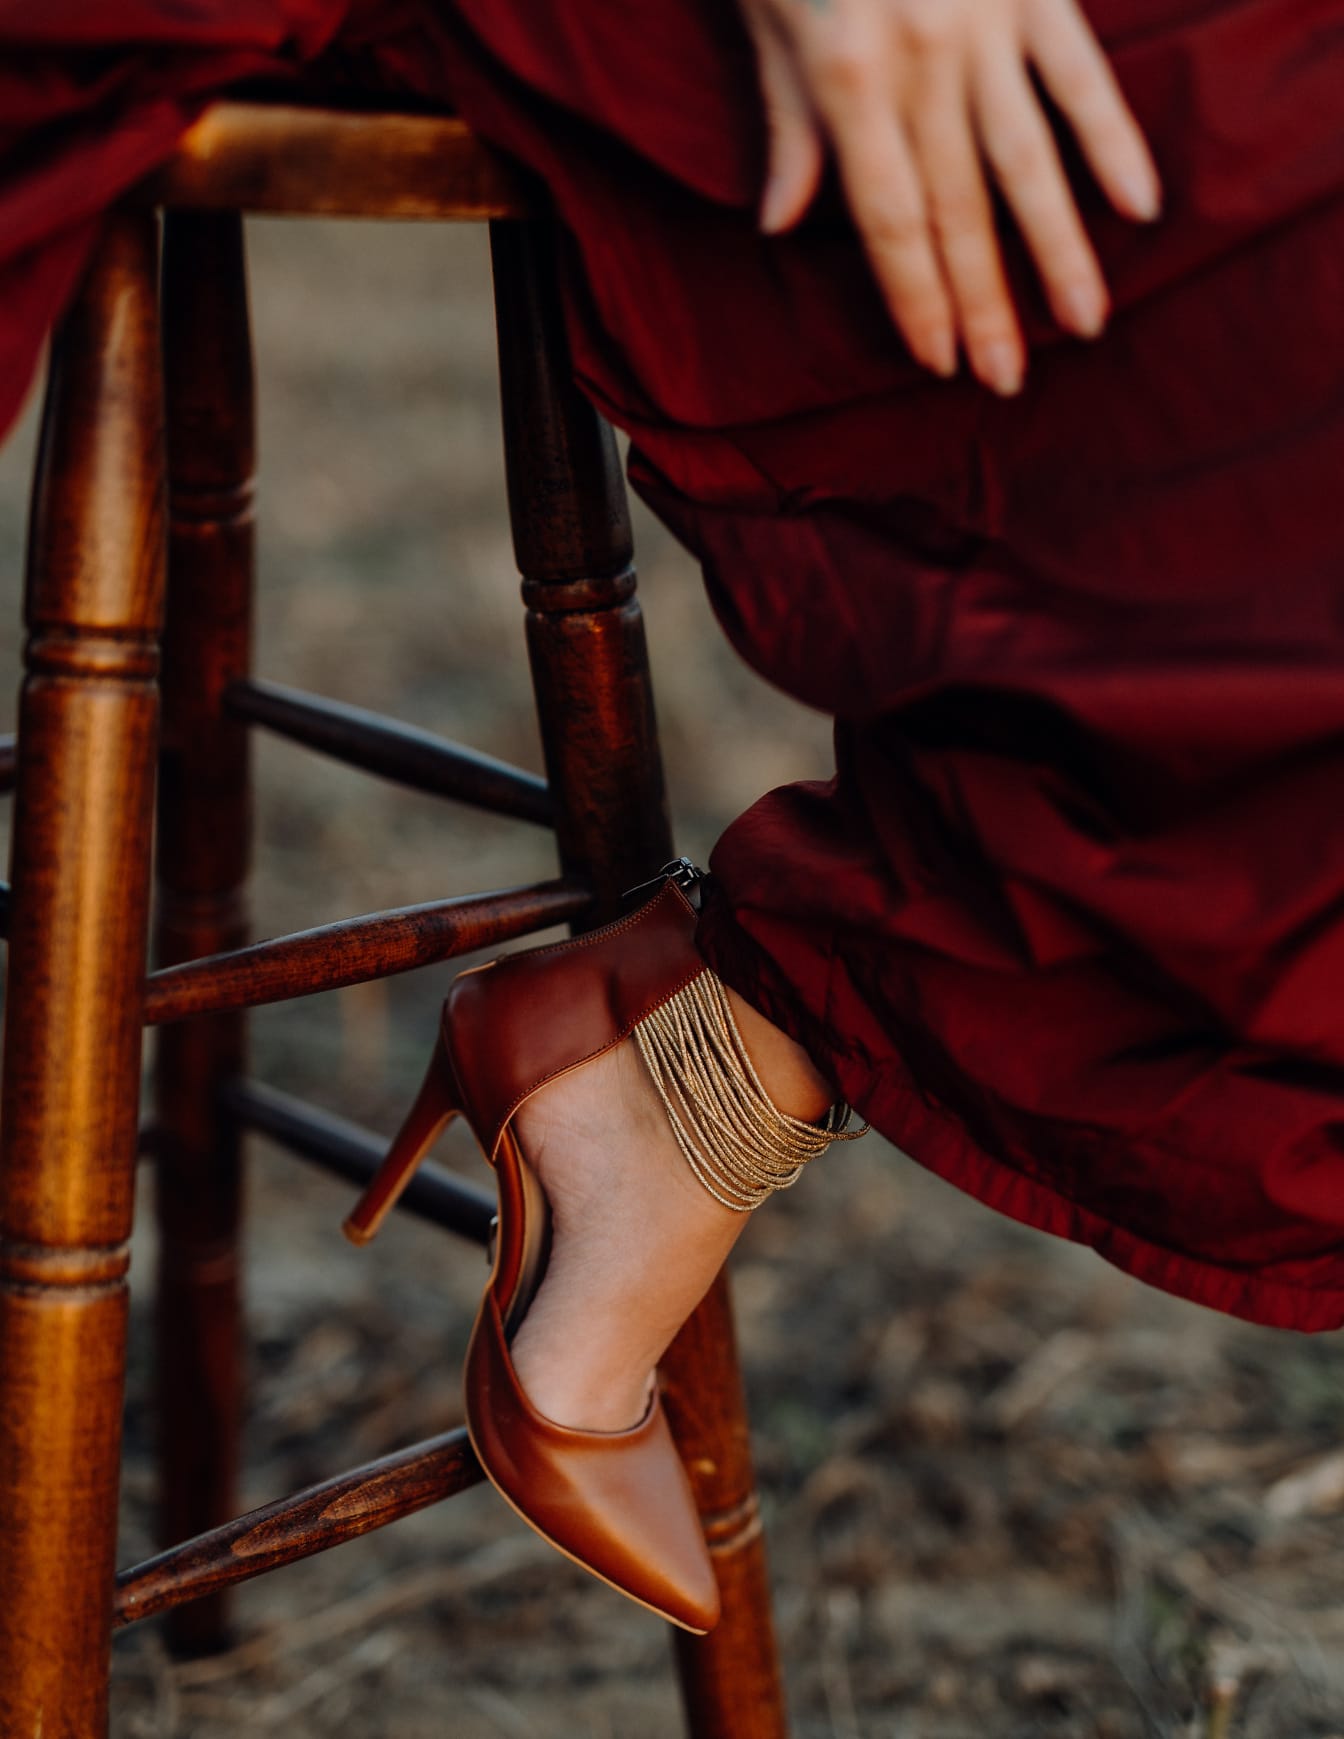 Tamnocrvene sandale na nozi žena u crvenoj haljini sjede na stolici